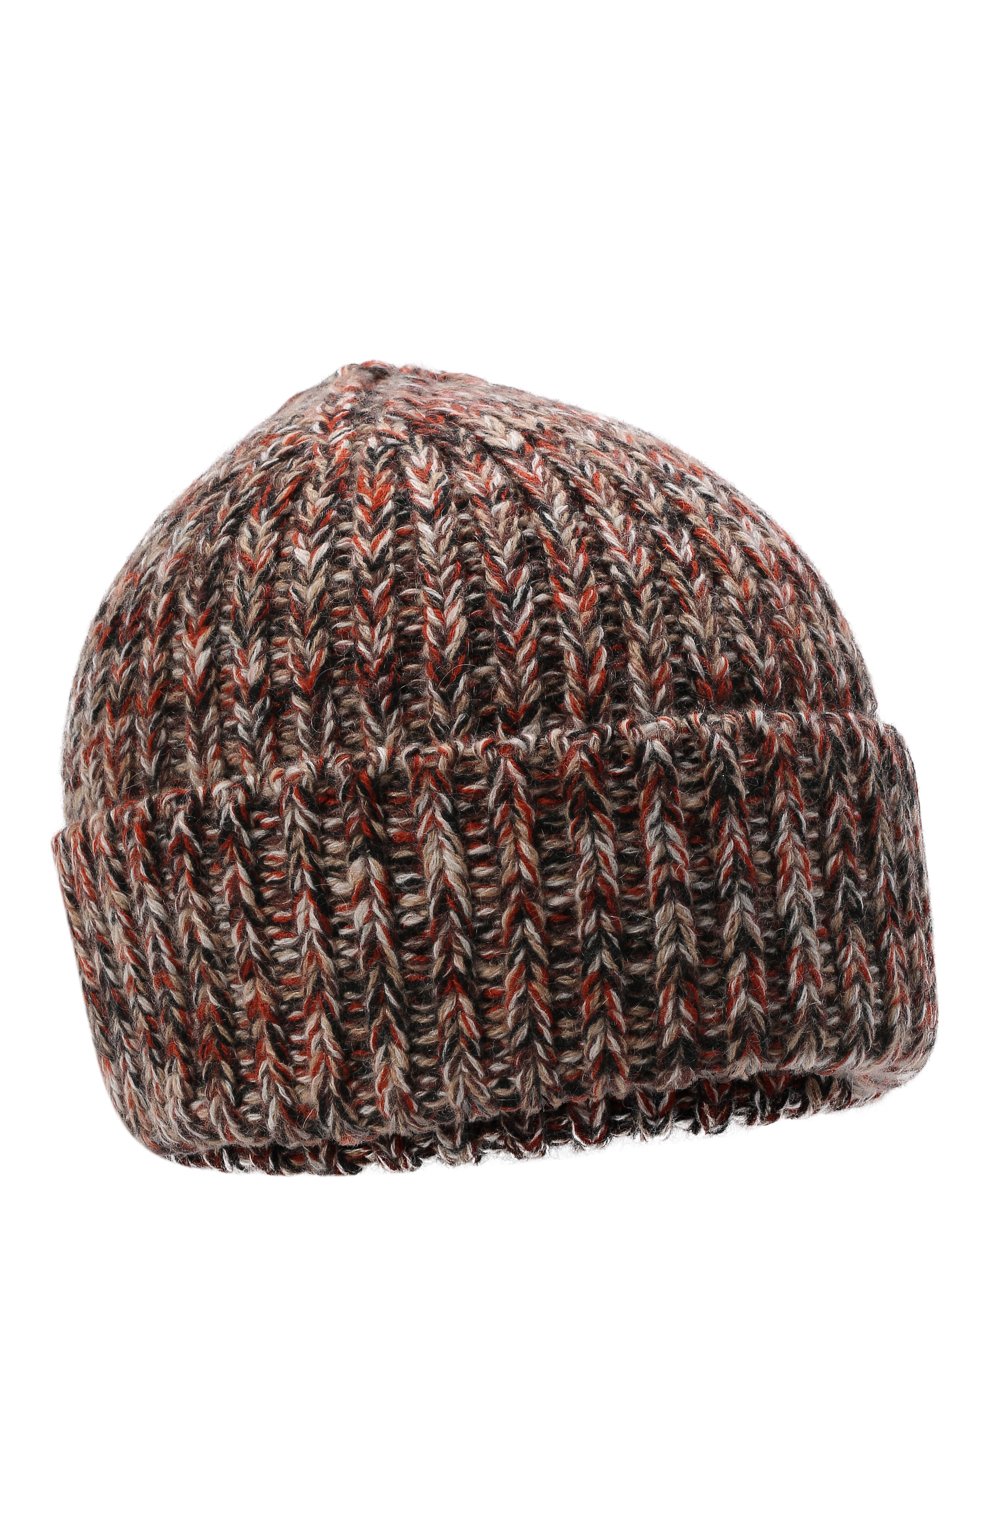 Женская шапка из кашемира и шерсти CHLOÉ коричневого цвета, арт. CHC21WMB03630 | Фото 1 (Материал: Текстиль, Кашемир, Шерсть)